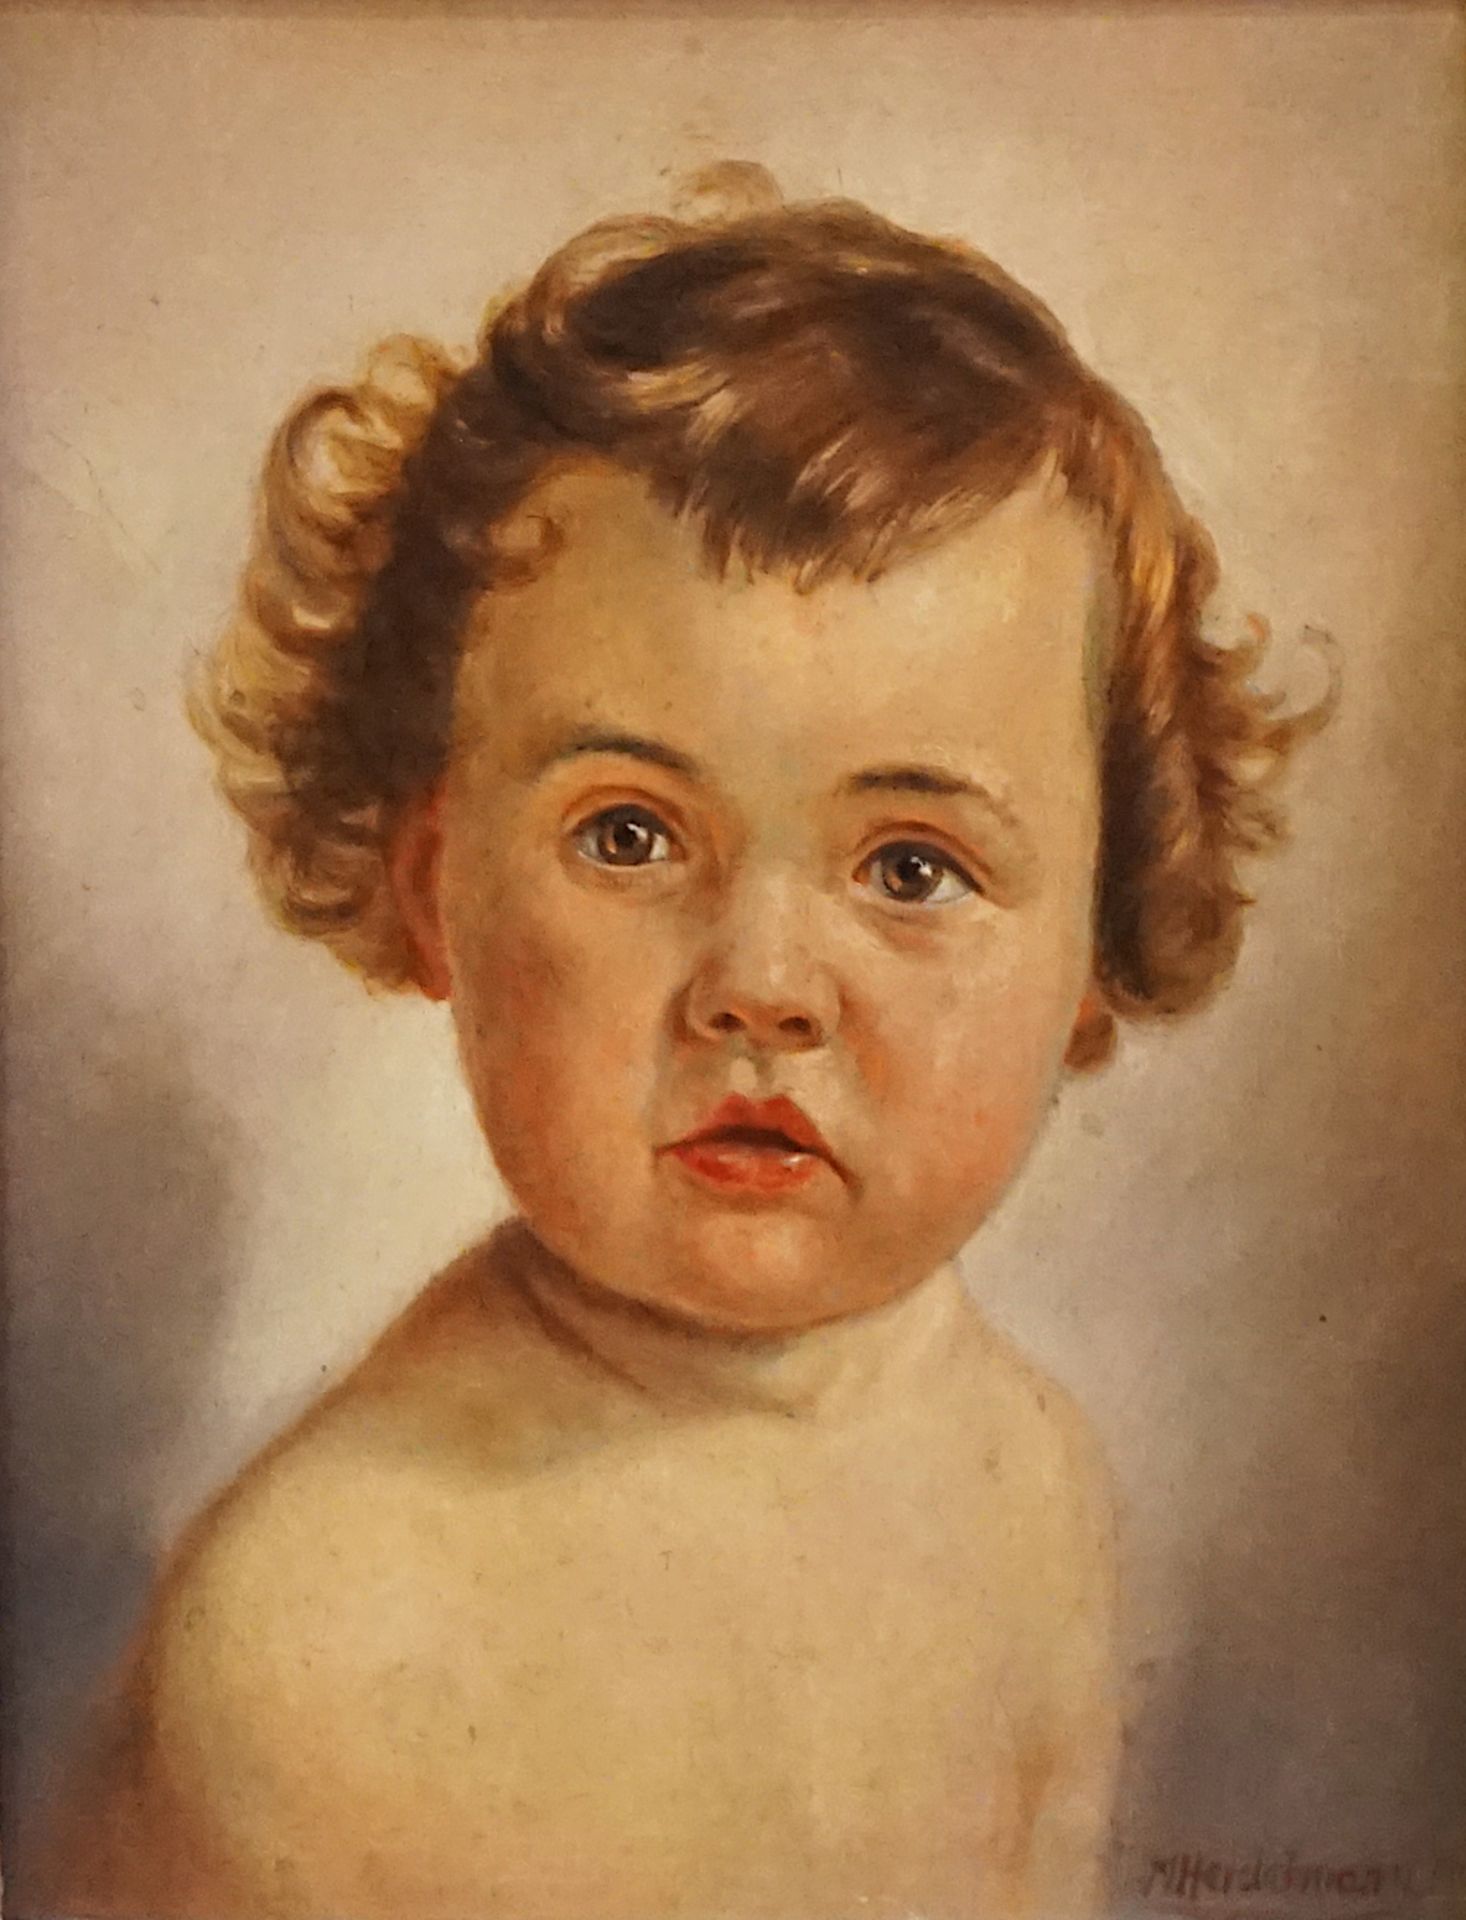 1 Ölgemälde "Kinderportrait" R.u. sign. M. HEIDELMANN